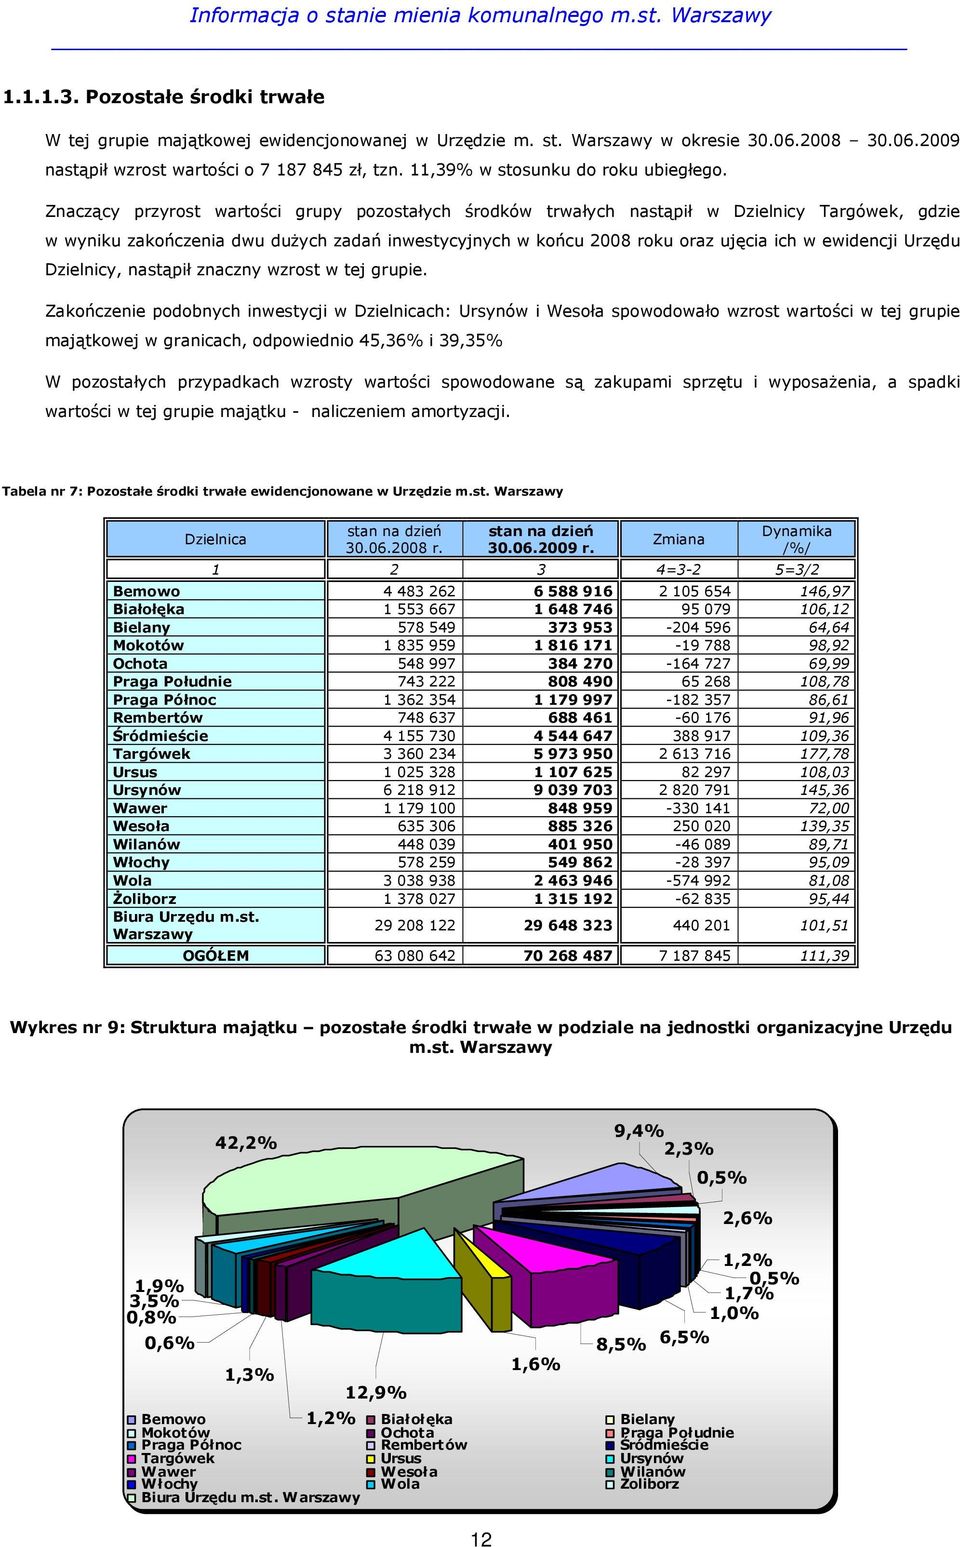 Znaczący przyrost wartości grupy pozostałych środków trwałych nastąpił w Dzielnicy Targówek, gdzie w wyniku zakończenia dwu duŝych zadań inwestycyjnych w końcu 2008 roku oraz ujęcia ich w ewidencji